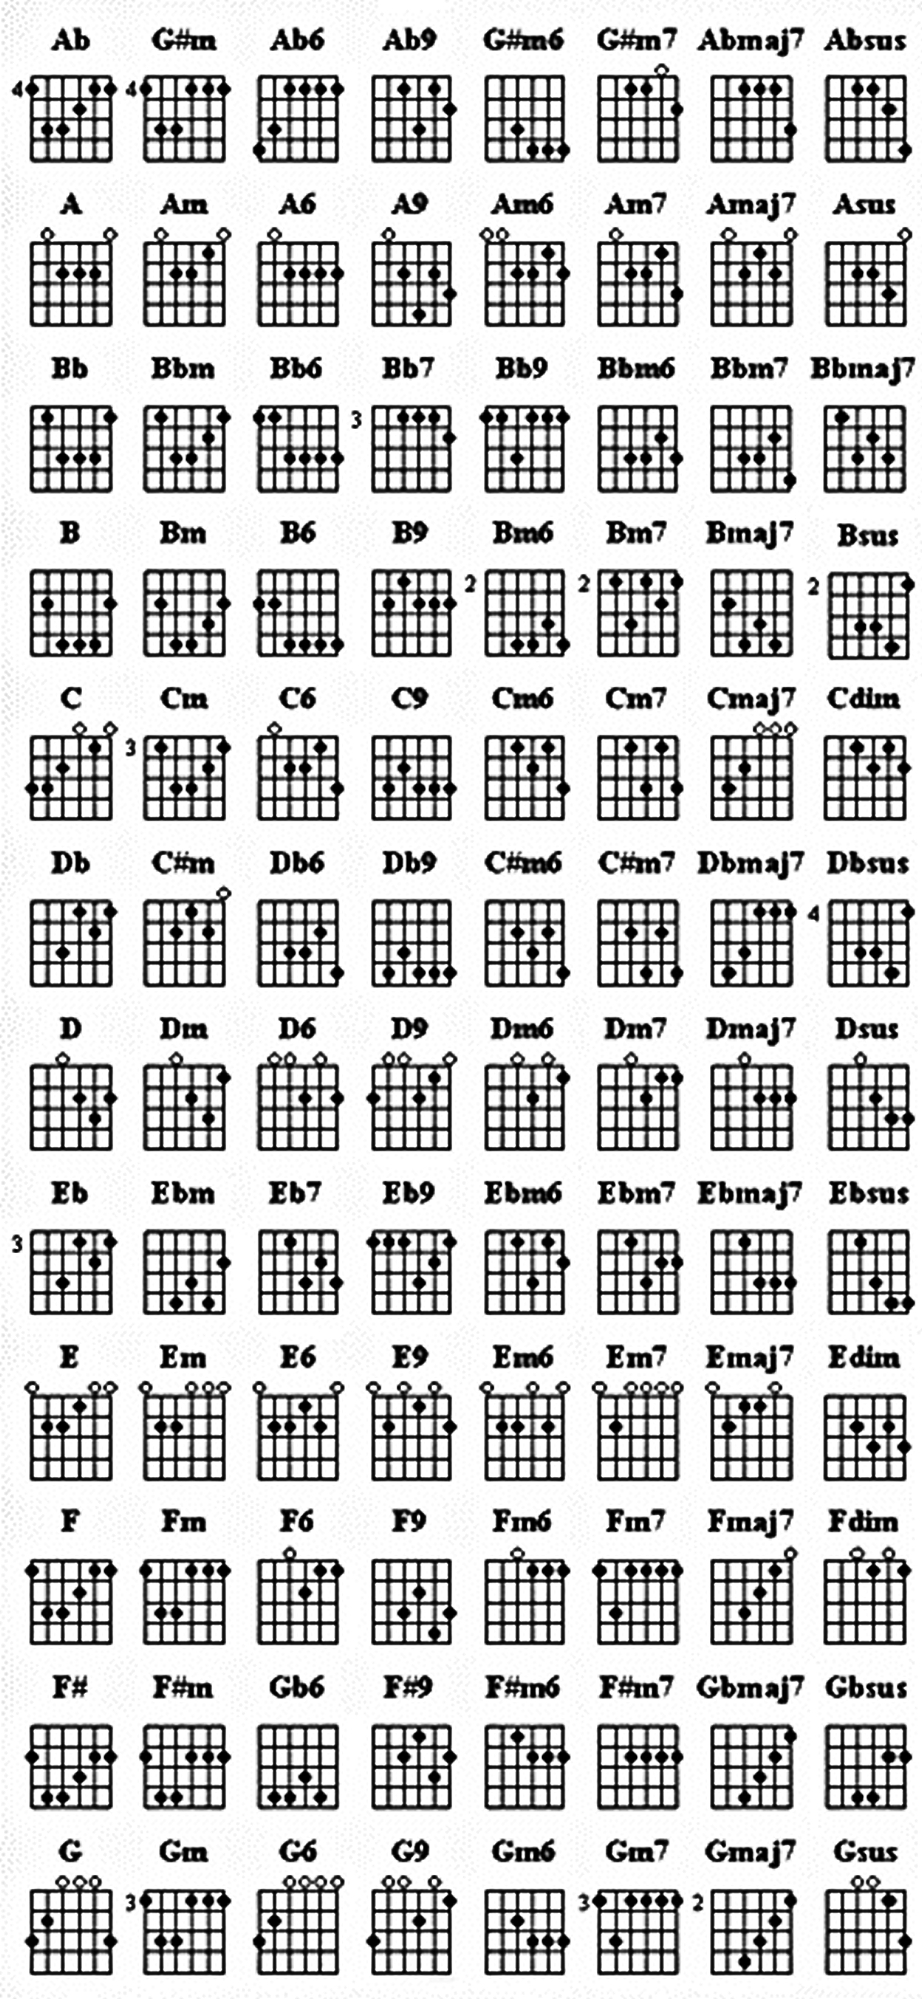 Bass Guitar Chords Template Bass Guitar Notes Chart Chart